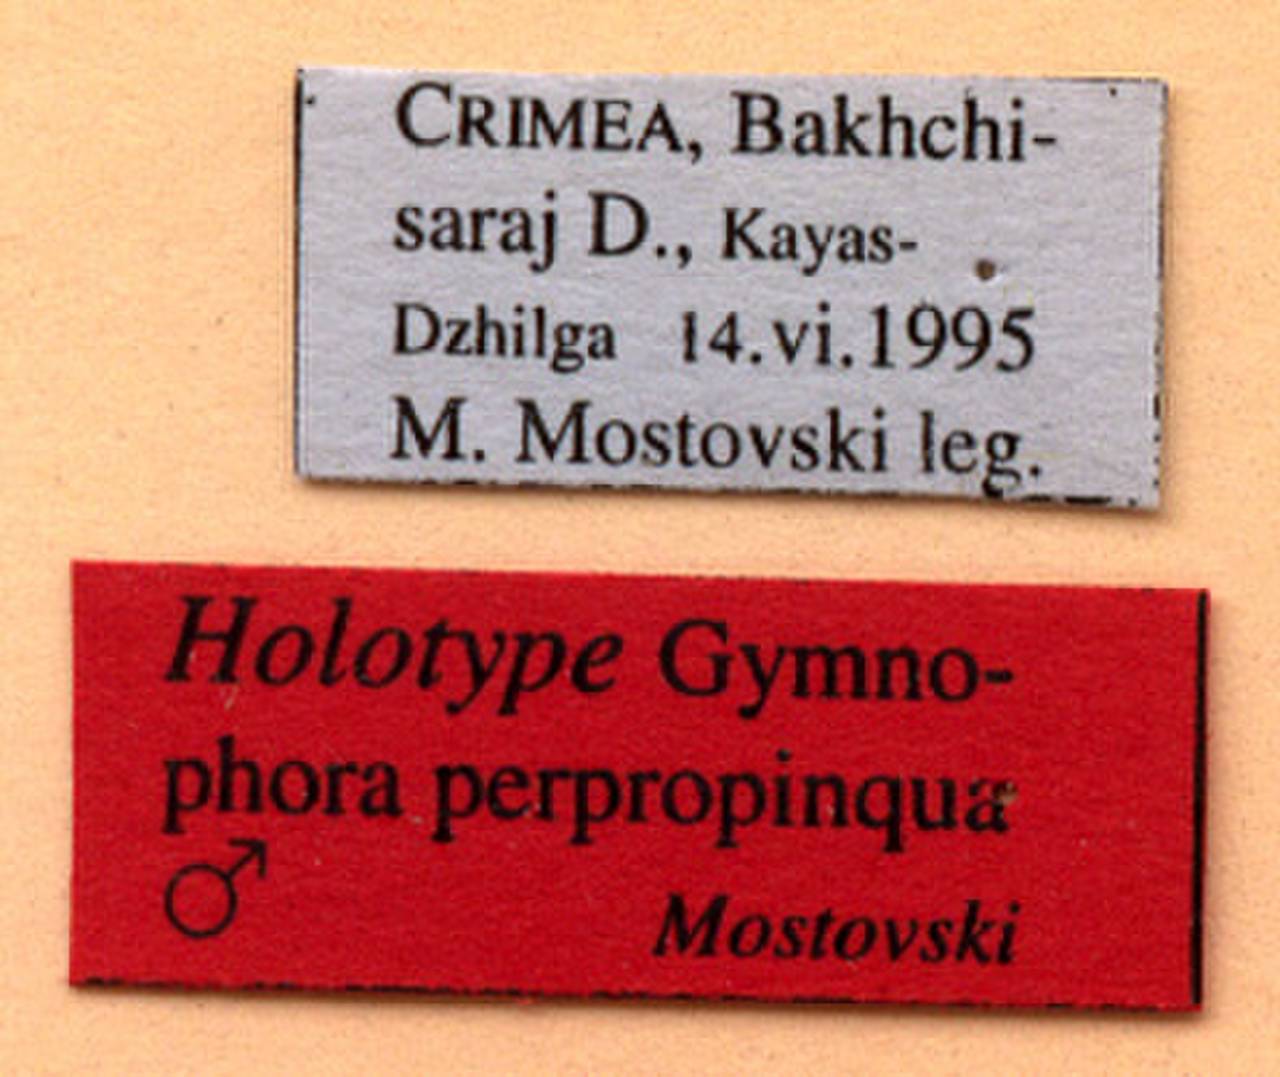 perpropinqua_mostovski_(gymnophora), (Kyrgyzstan)